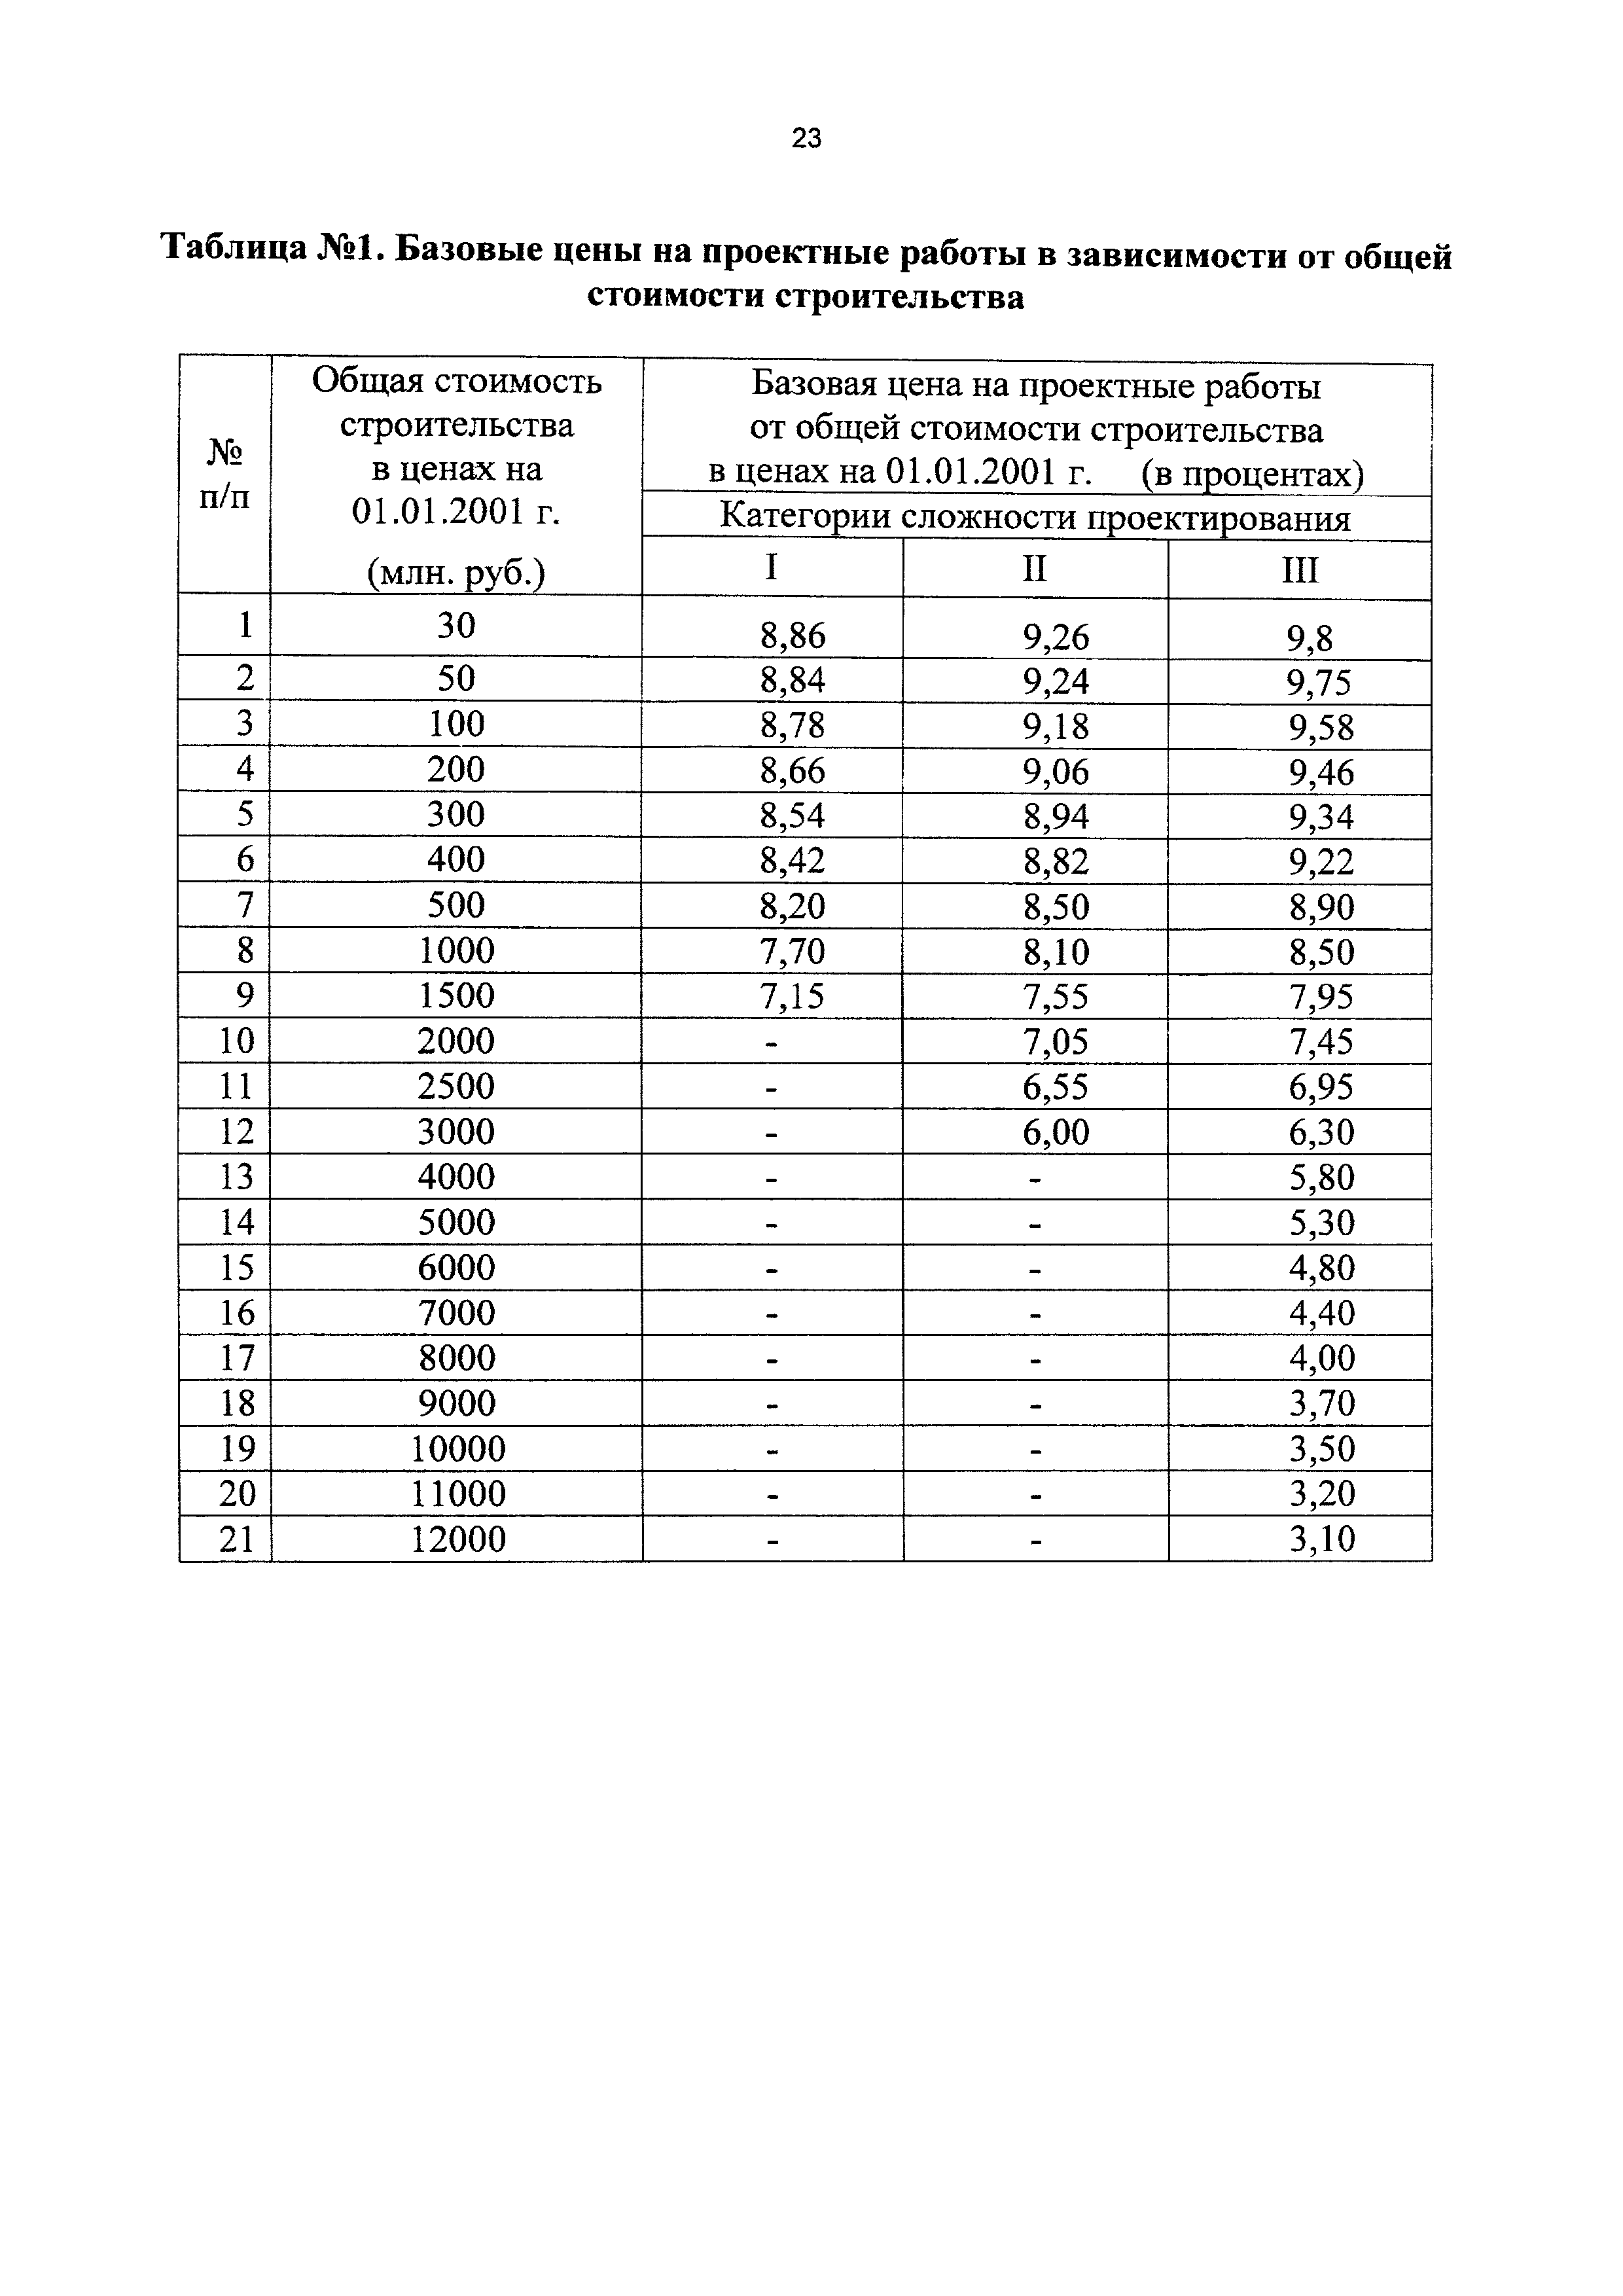 СБЦП 81-2001-18